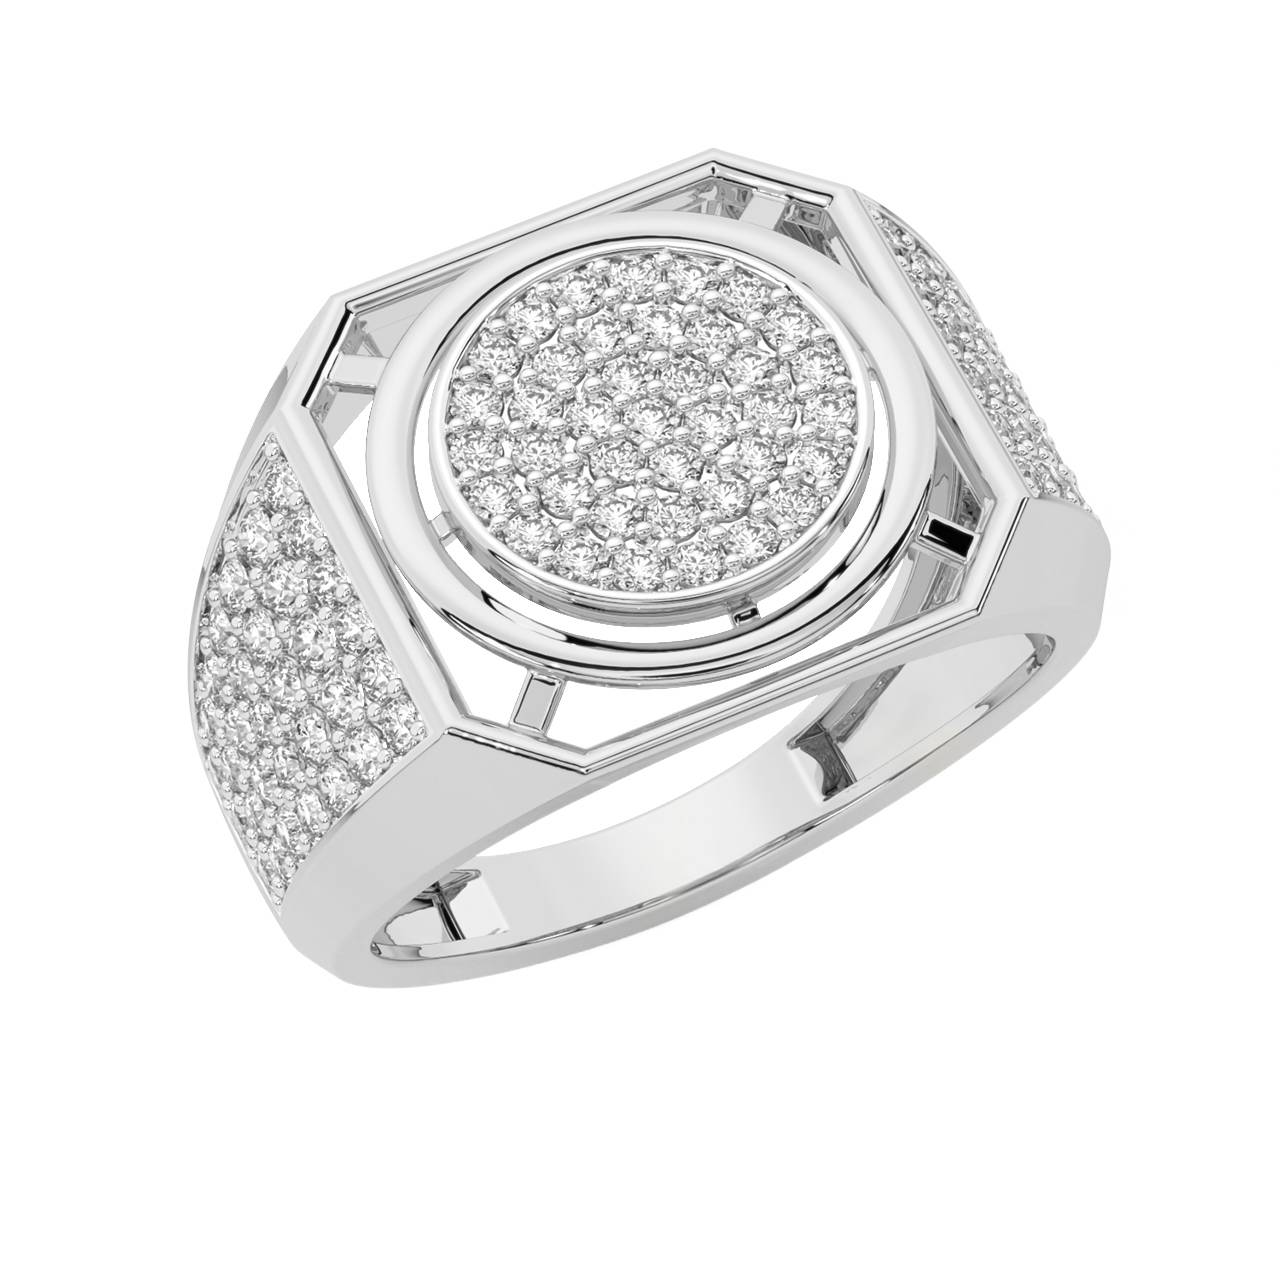 The Stunning Design Ring For Men